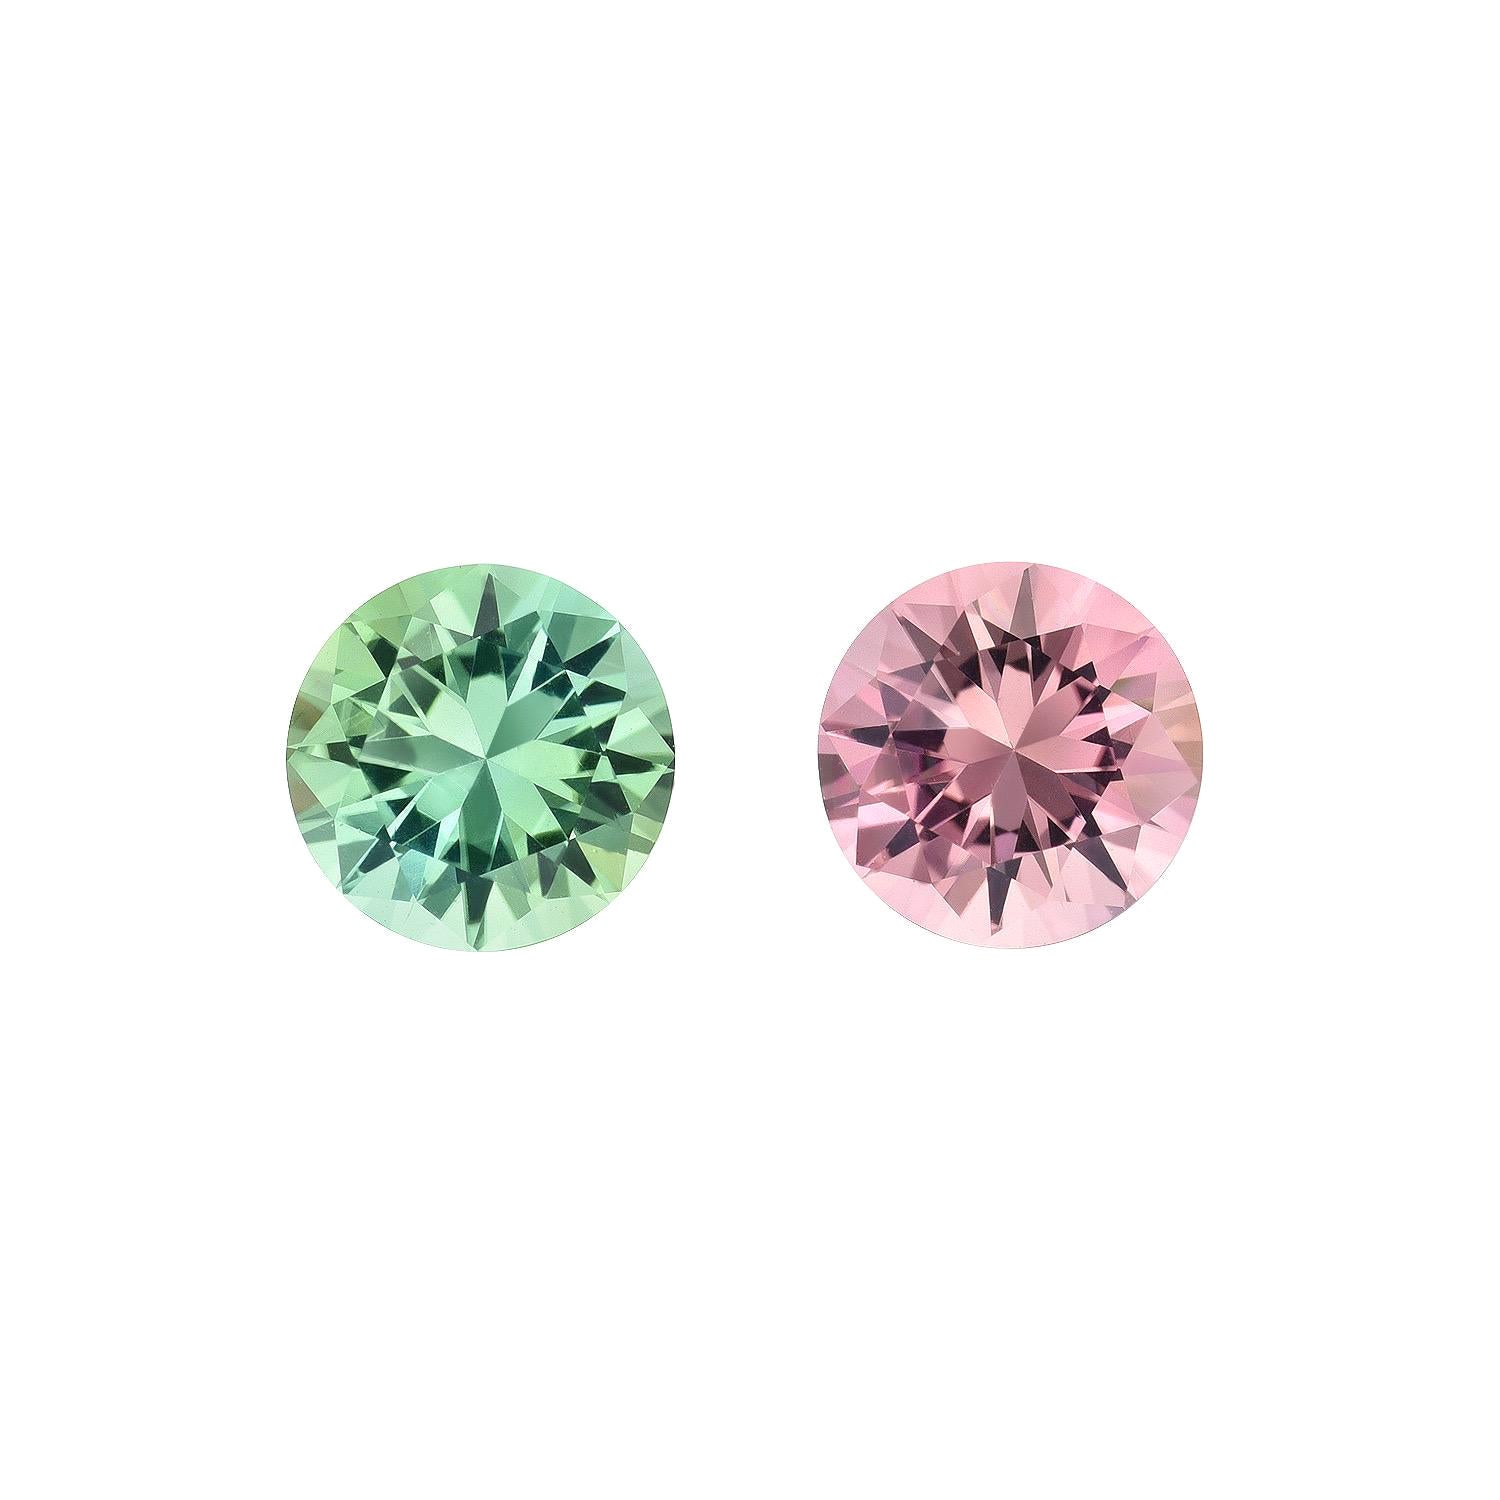 Boucles d'oreilles en tourmaline rose et verte 1,44 carat, pierres précieuses rondes